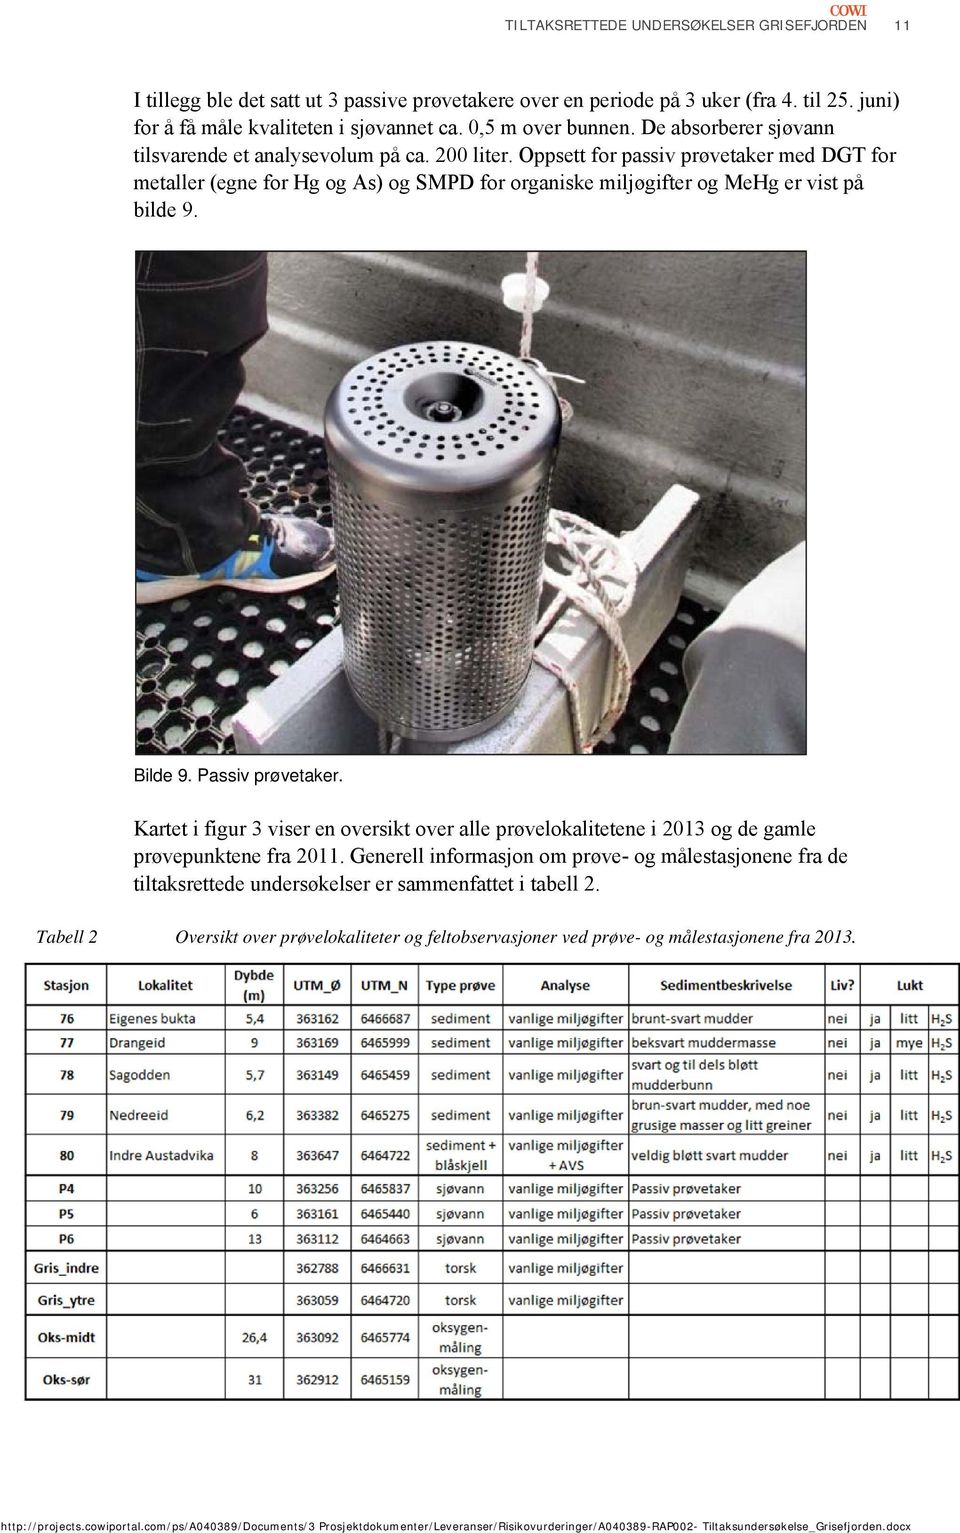 Oppsett for passiv prøvetaker med DGT for metaller (egne for Hg og As) og SMPD for organiske miljøgifter og MeHg er vist på bilde 9. Bilde 9. Passiv prøvetaker.